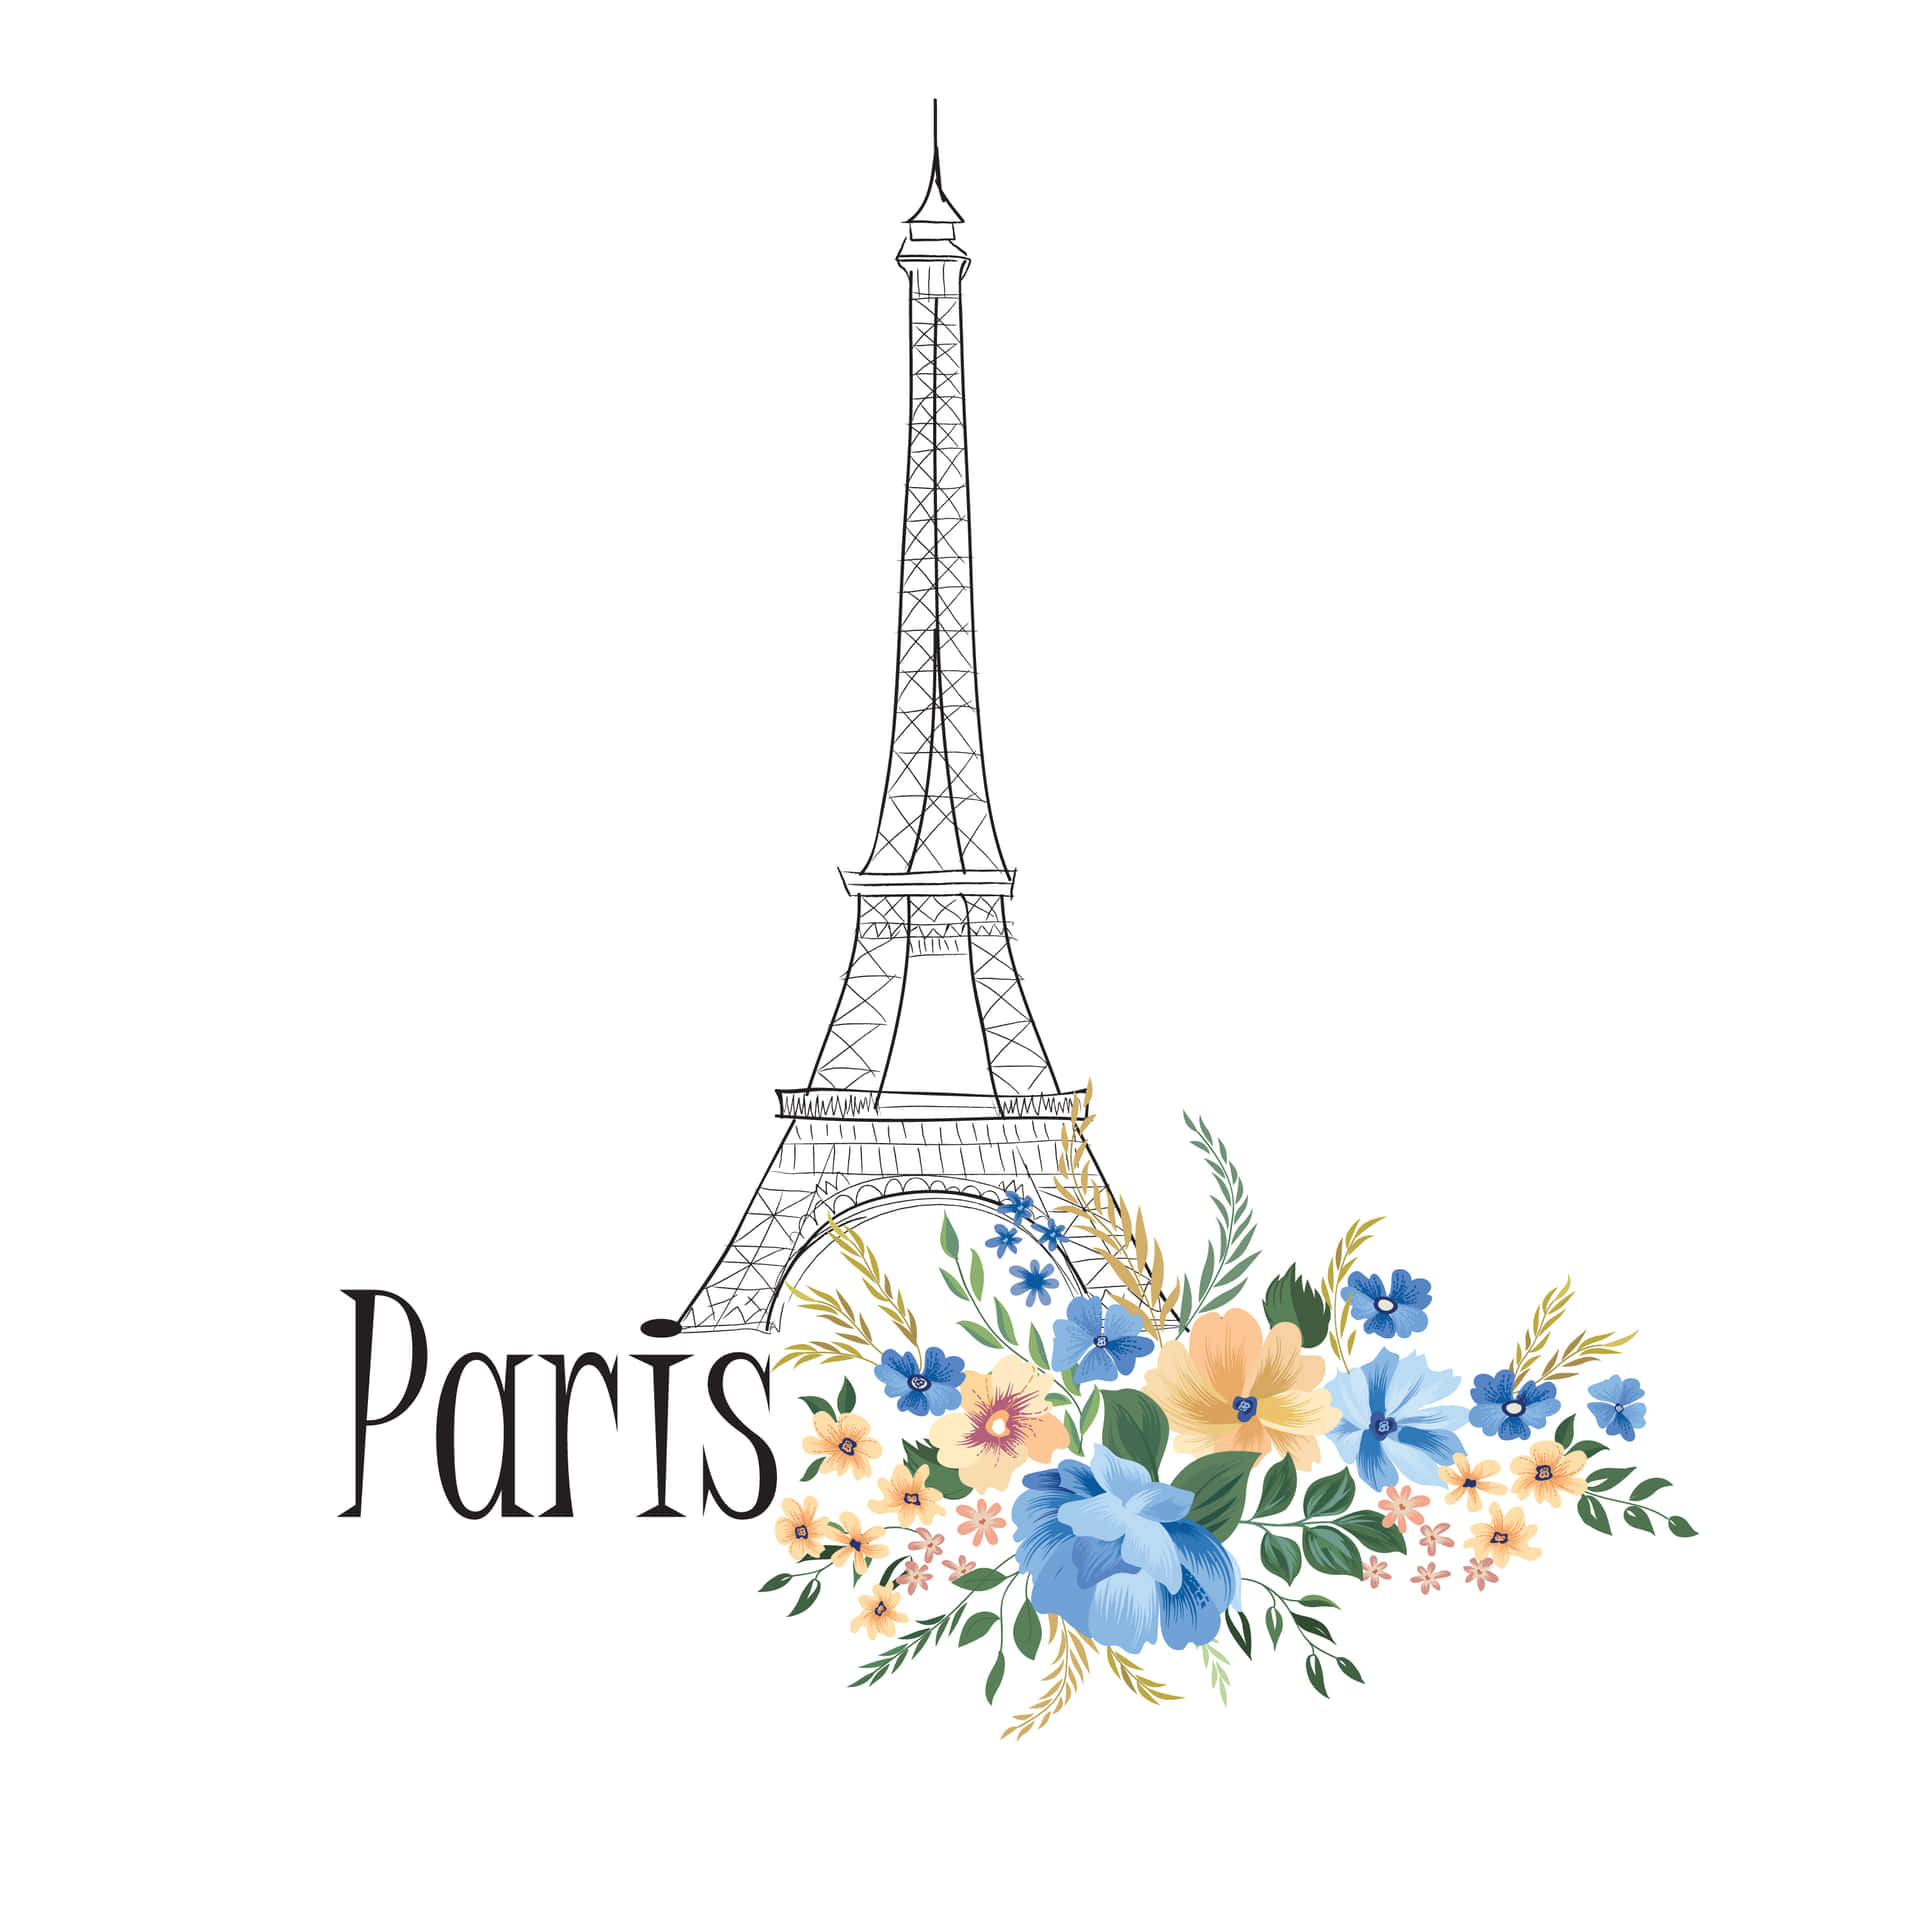 Romance and Wonder Await in Paris